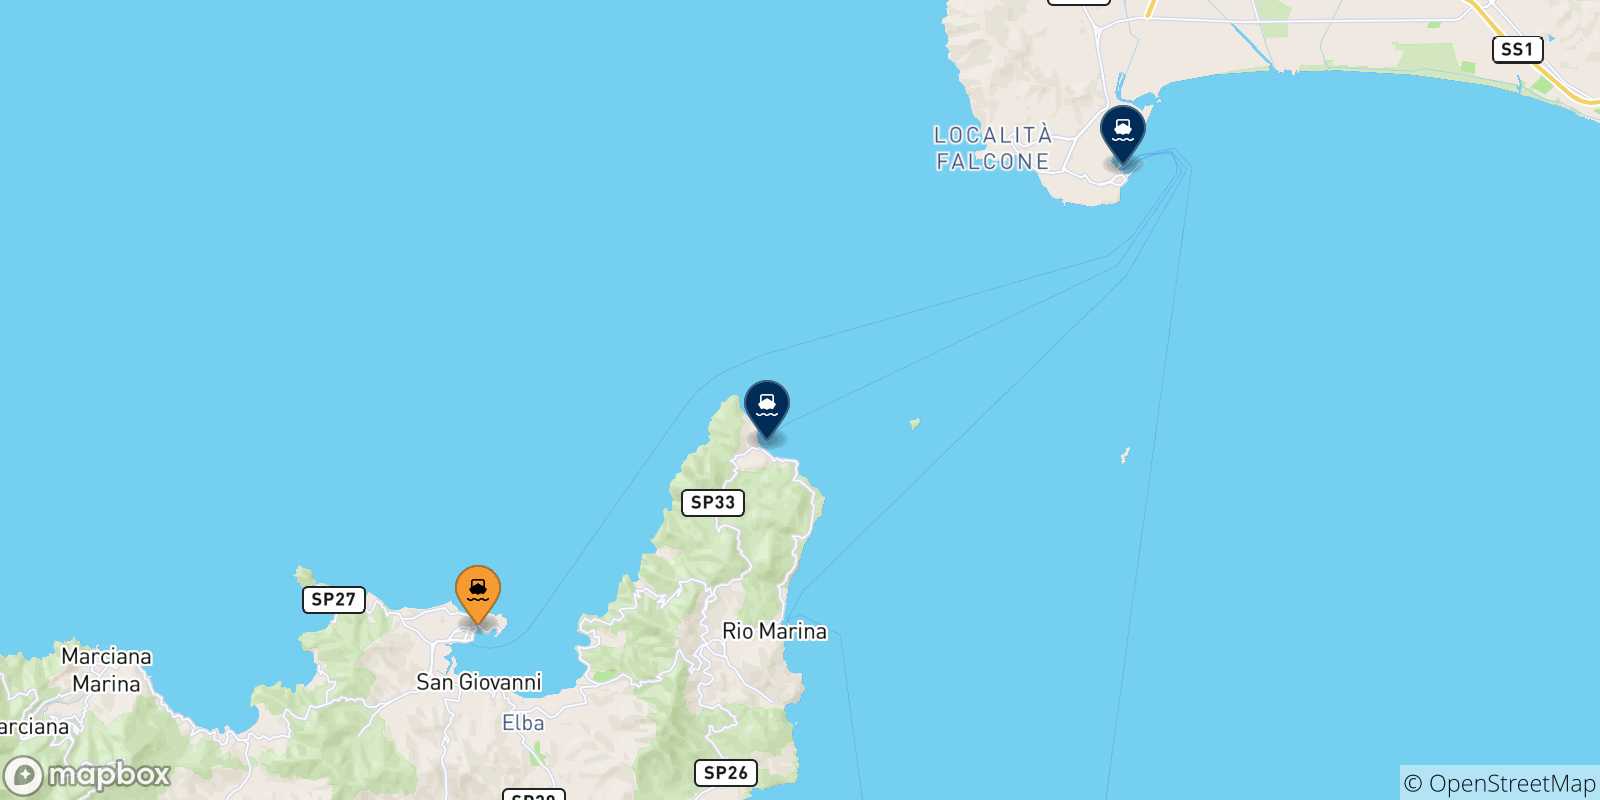 Mappa delle possibili rotte tra Portoferraio e l'Italia